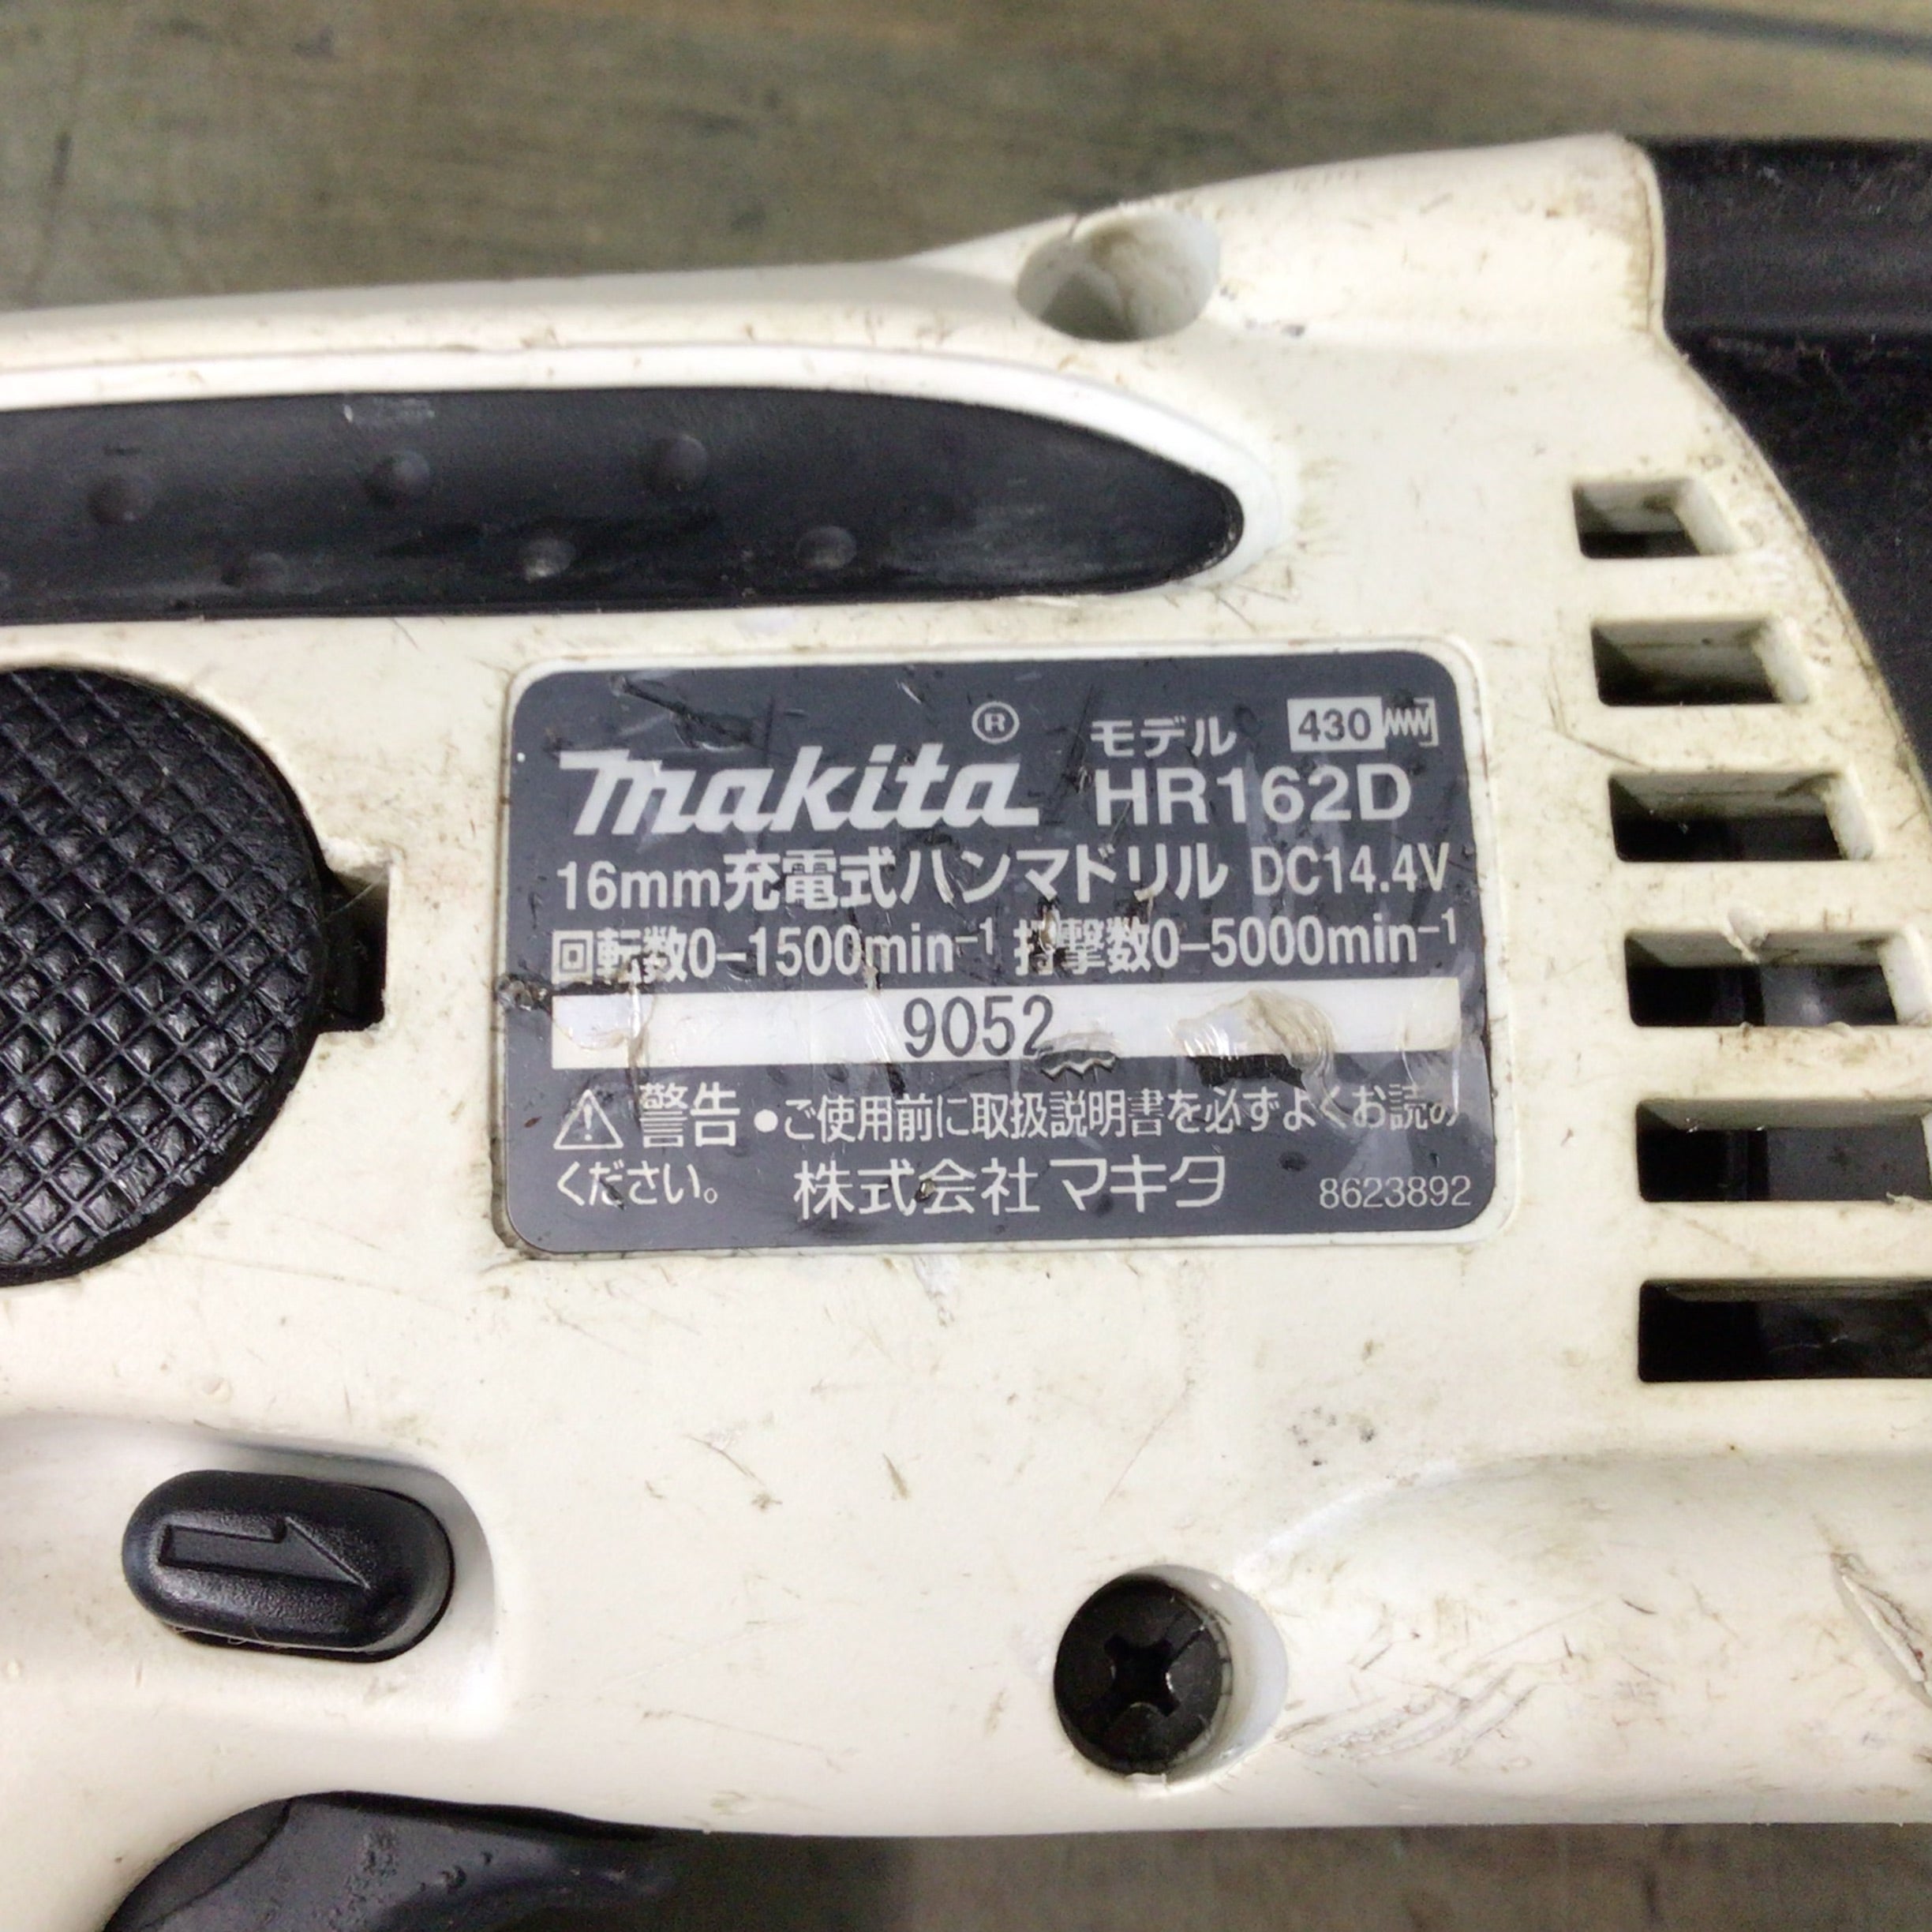 マキタ ハンマドリル 16mm DC14.4v HR162D